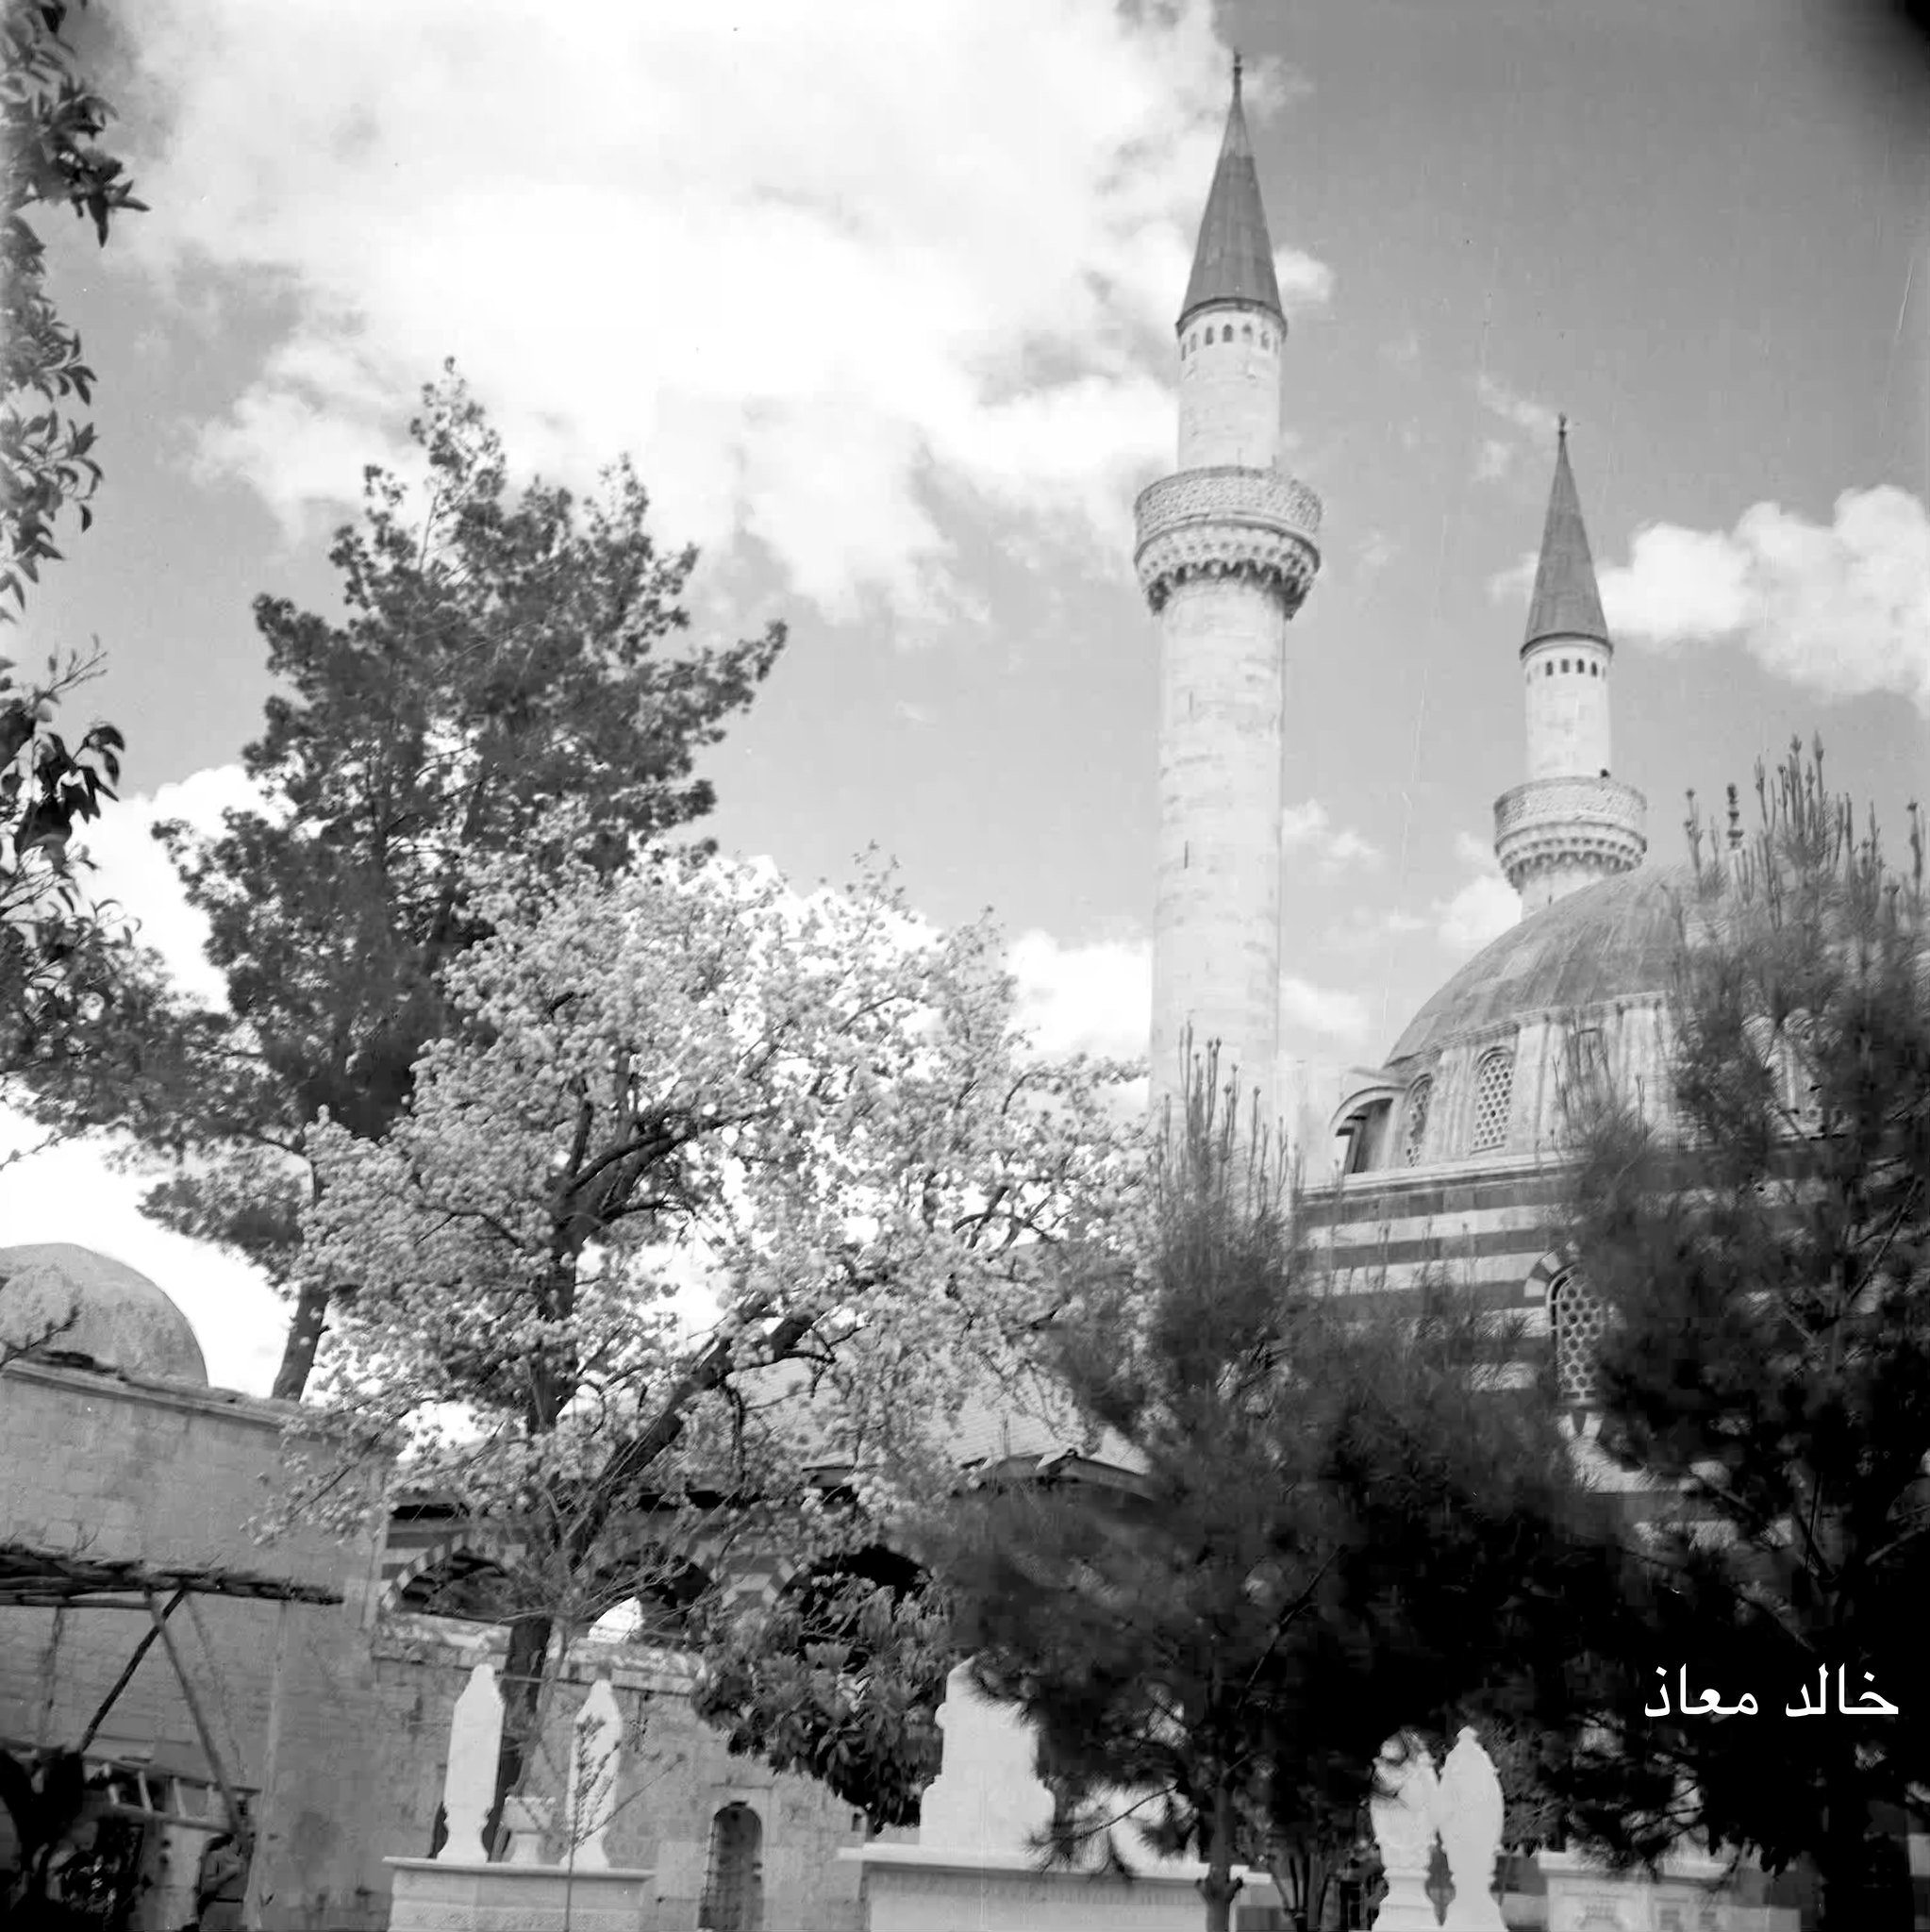 التاريخ السوري المعاصر - The Sulaymaniyah hospice in Damascus in 1956